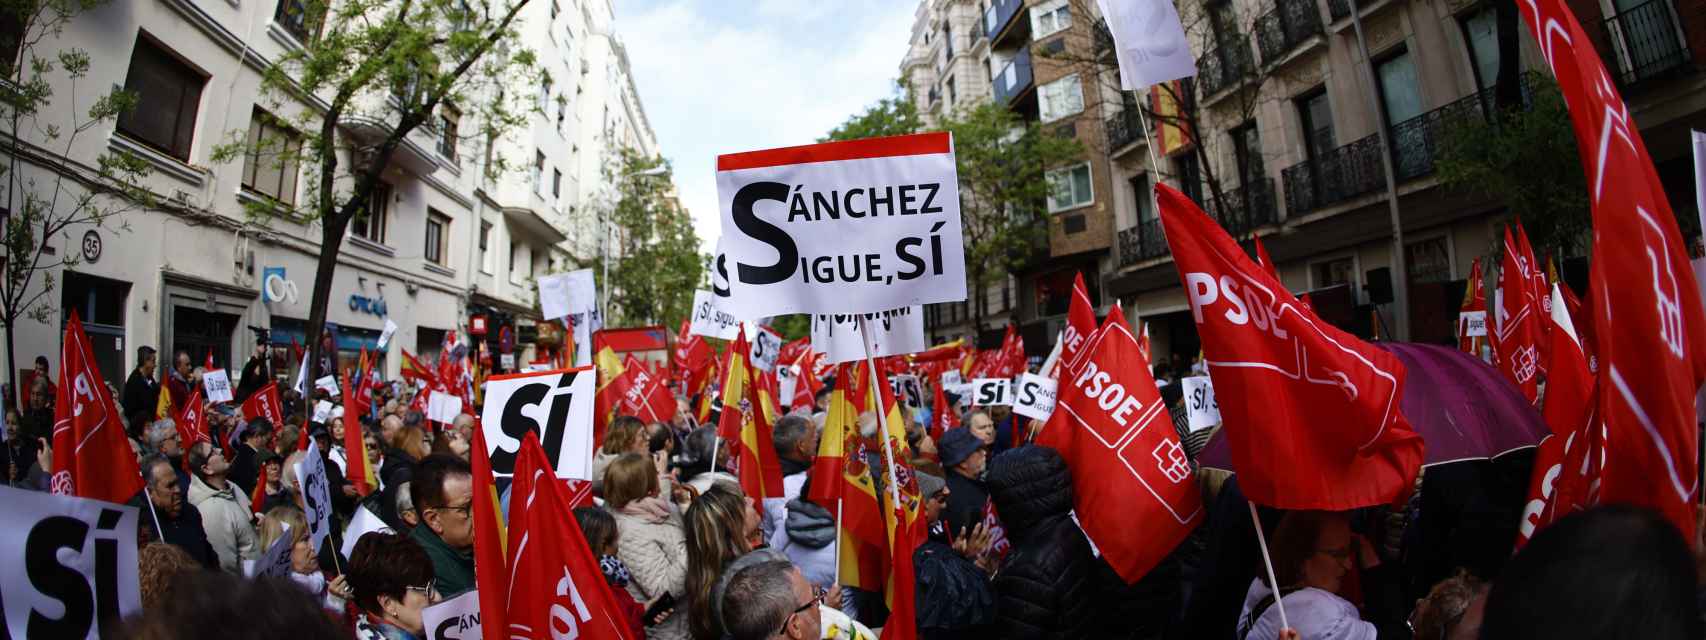 Pancartas en favor de Pedro Sánchez bajo el lema Sánchez sigue, sí en las inmediaciones de la sede del PSOE en Ferraz.